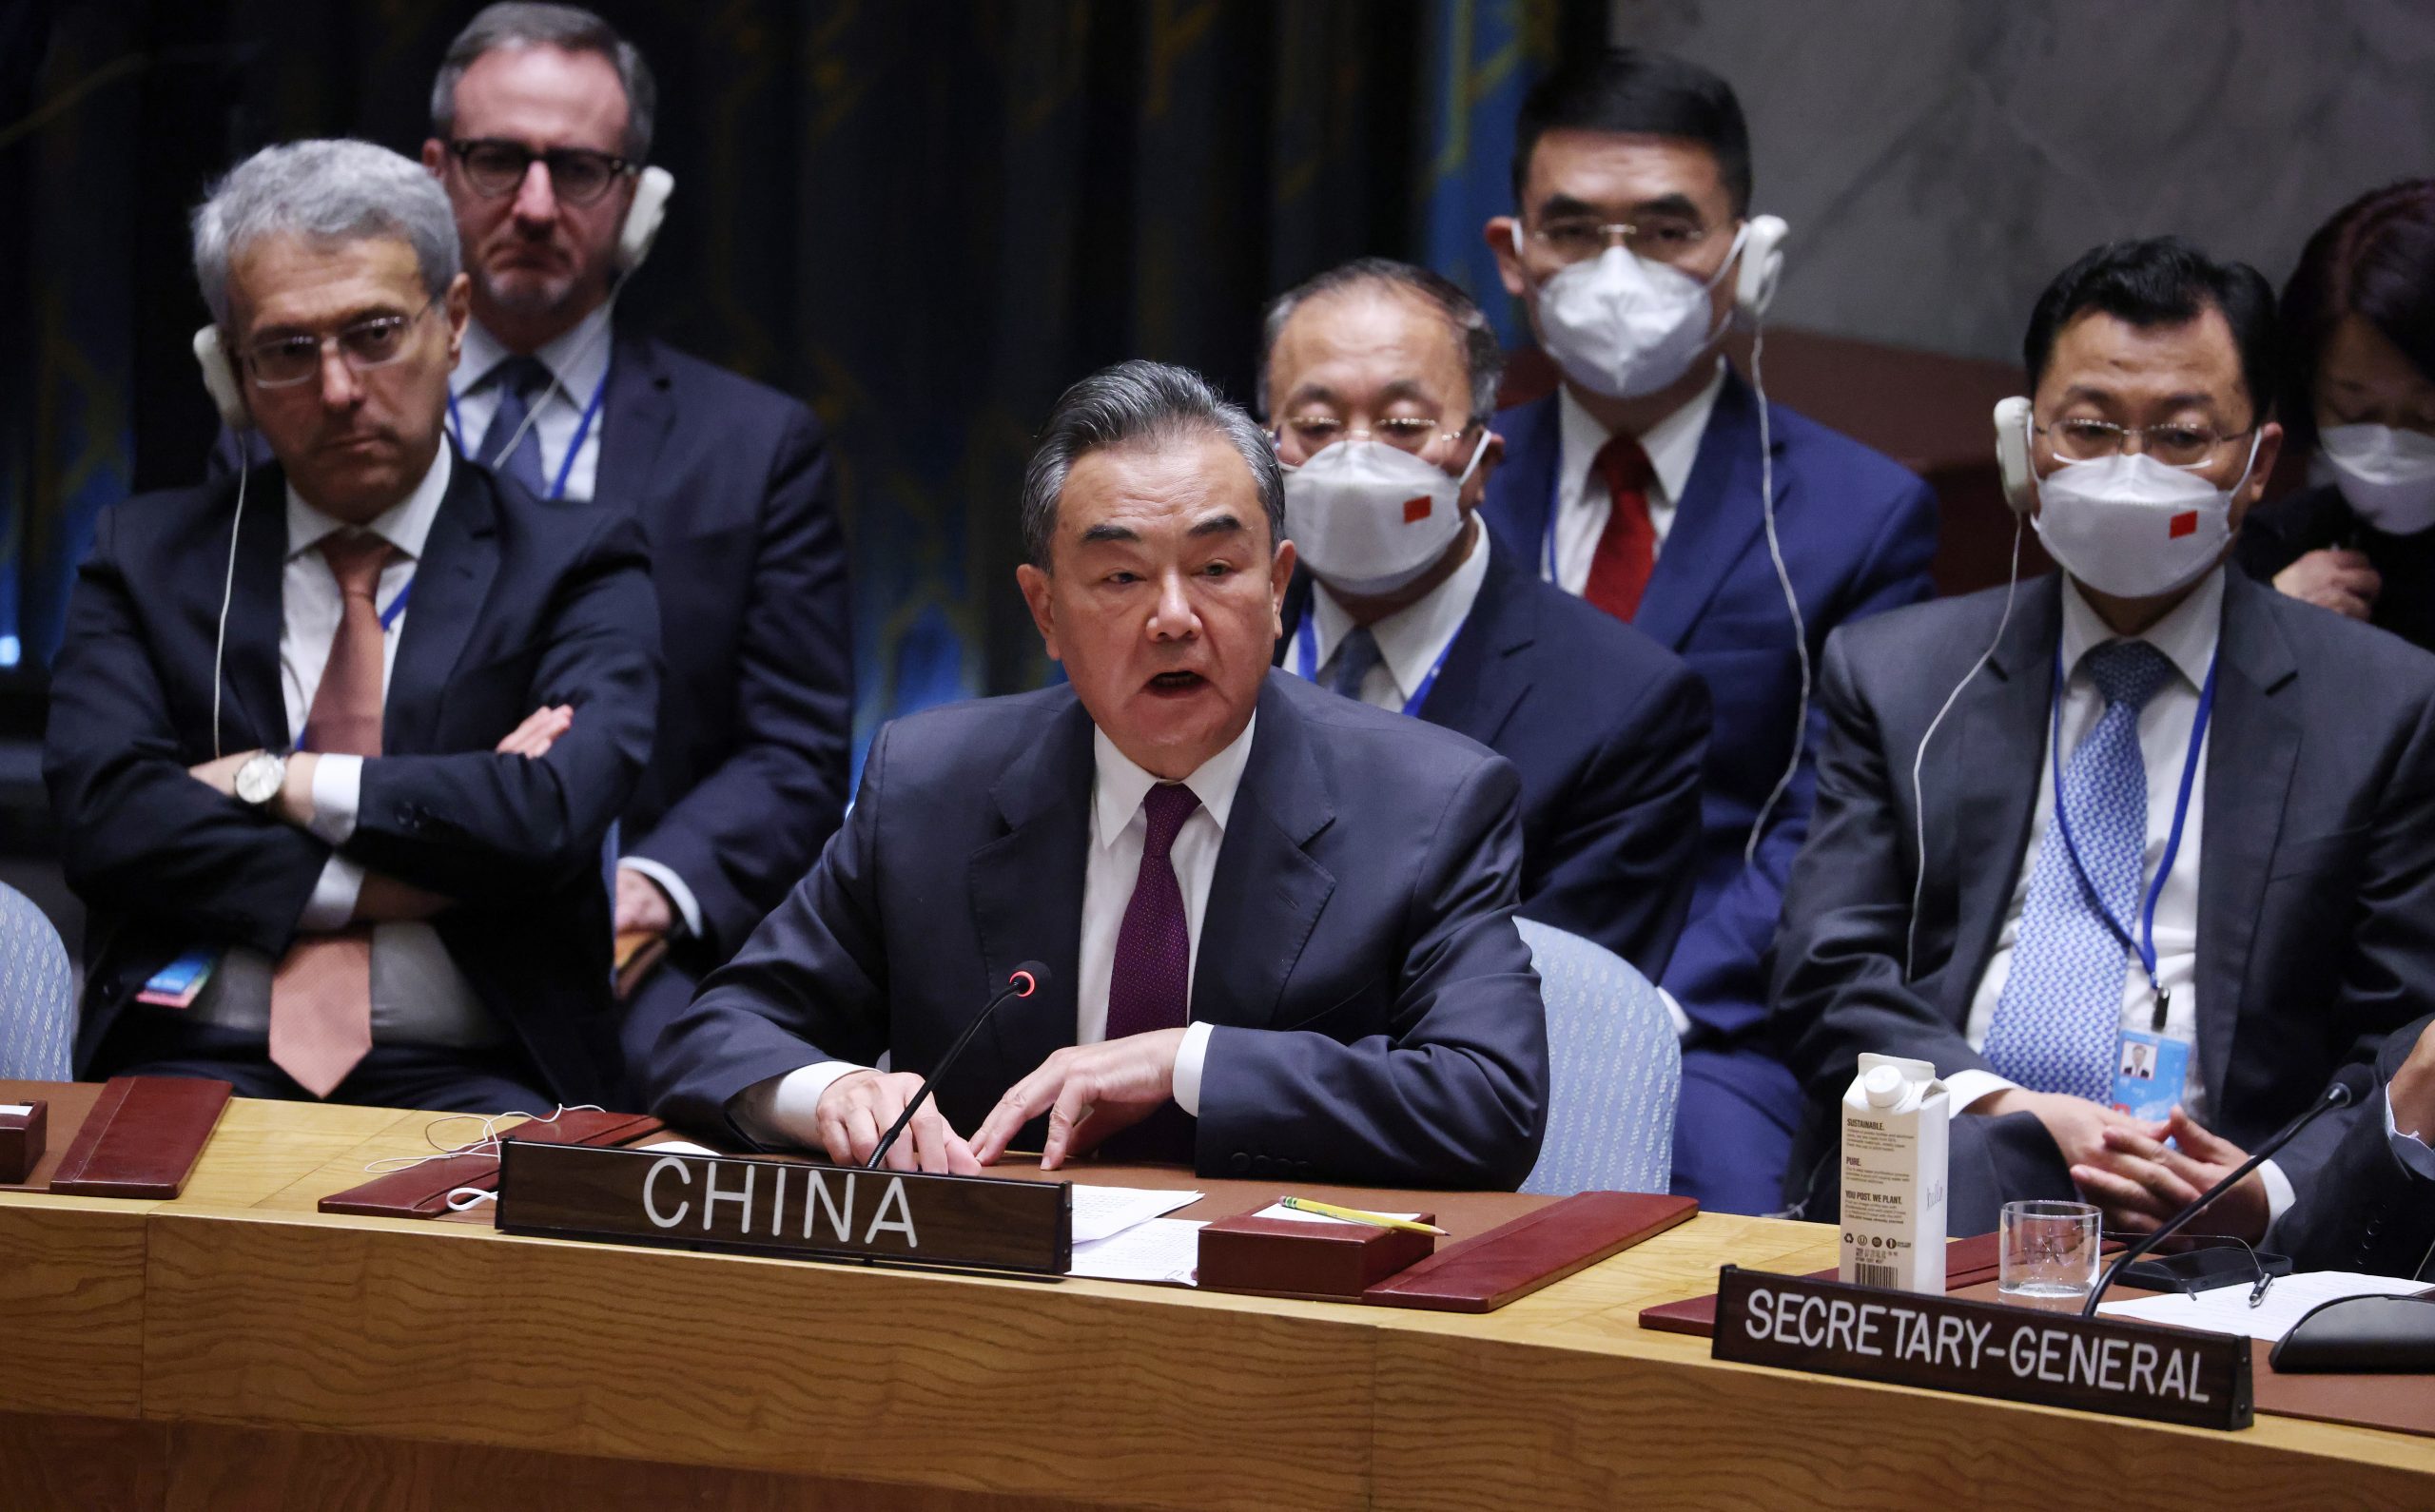 王毅提出对美国对华政策的四大疑问